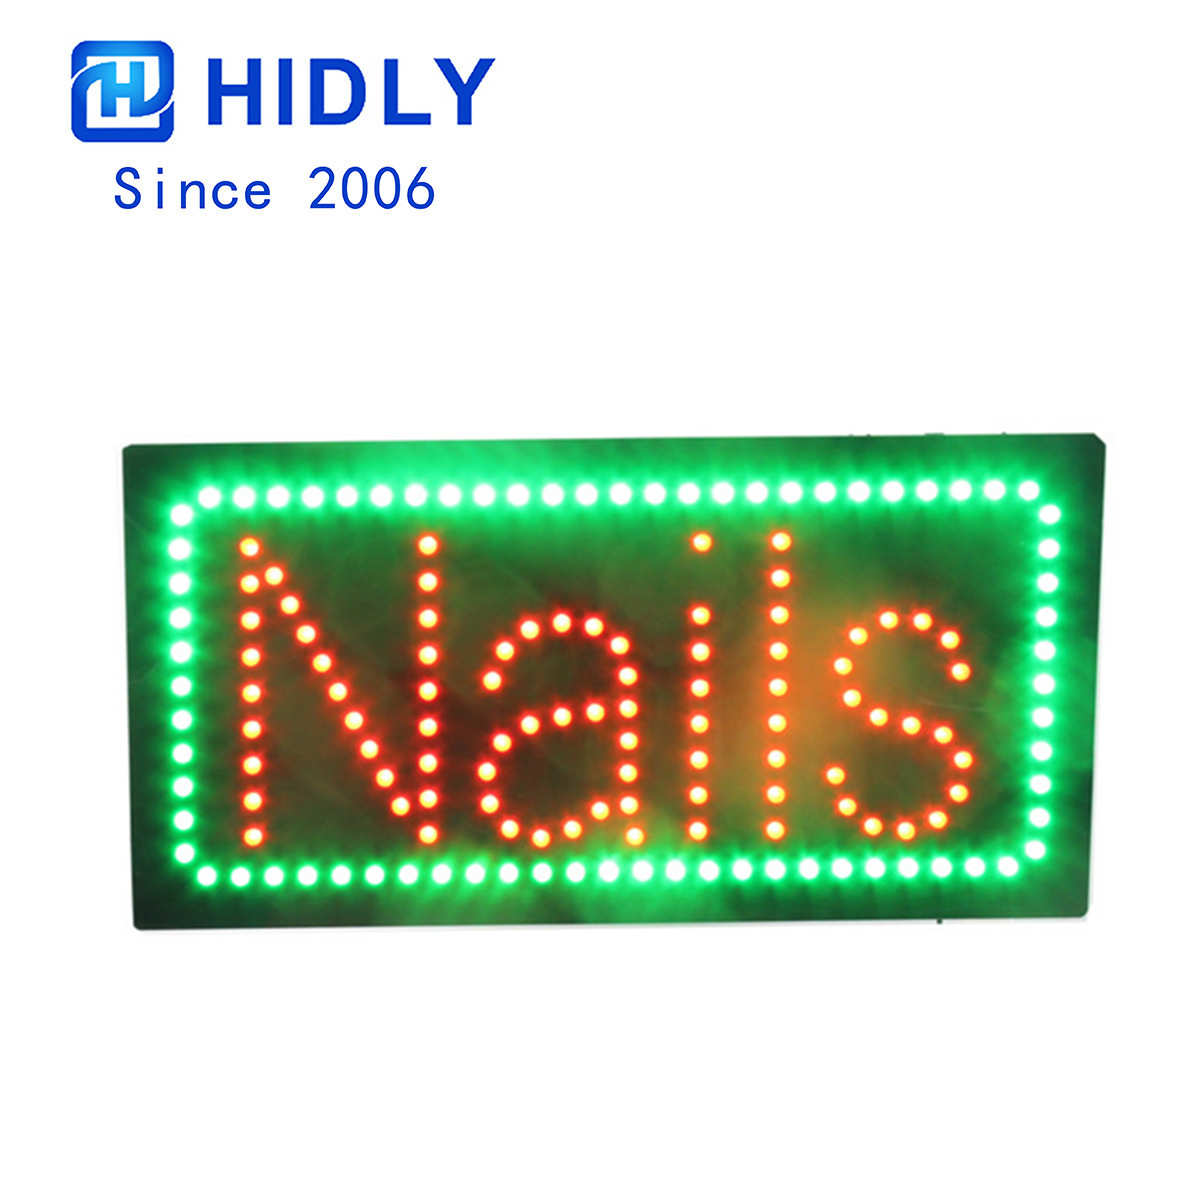 Nails animated led sign